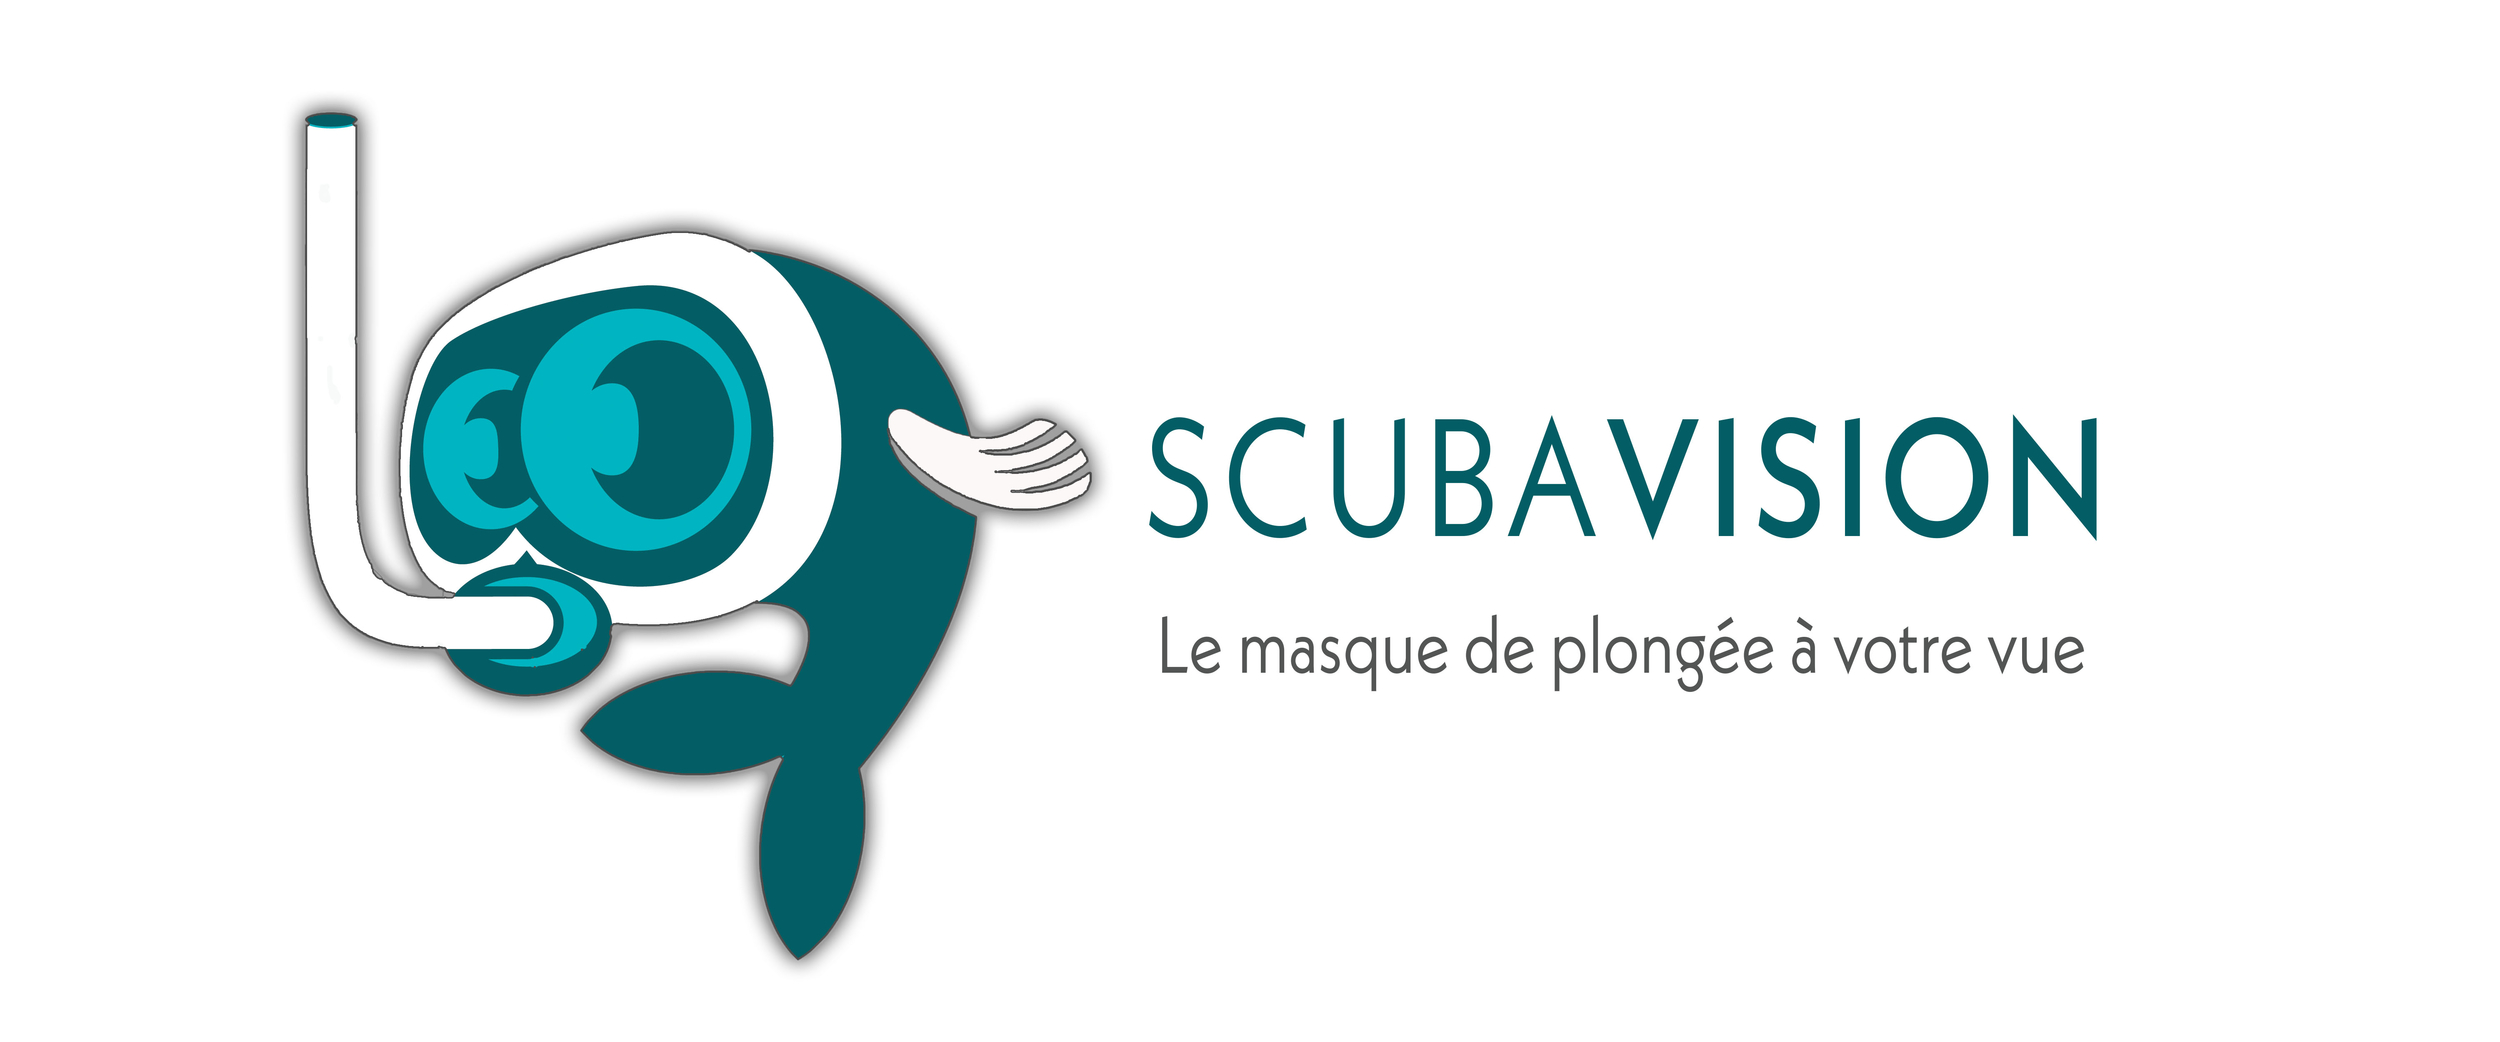 Scubavision.fr le spécialiste des masques de plongées progressifs